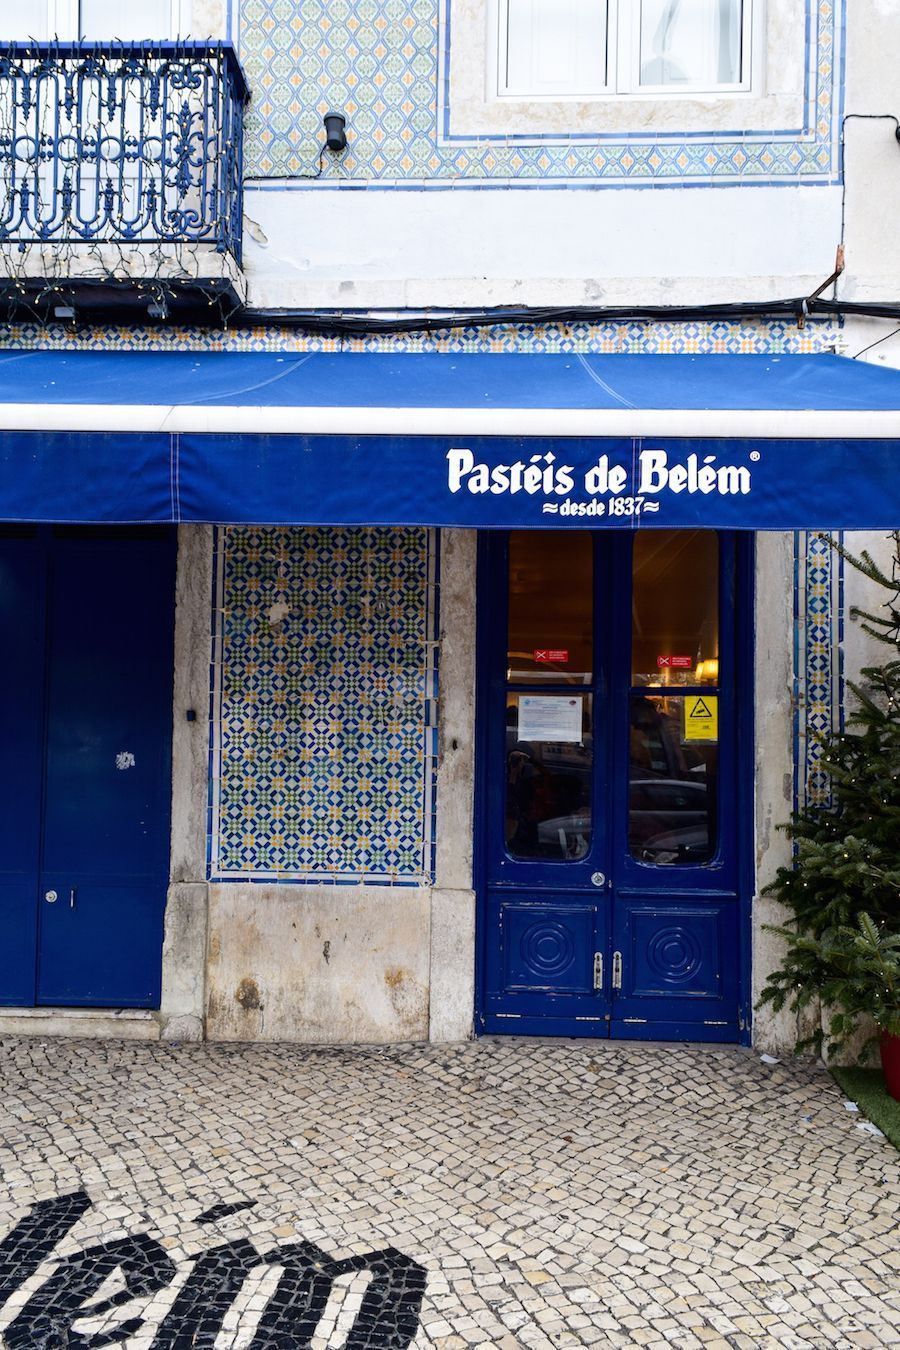 Pasteis de Belém Entrance, Lisbon, Portugal